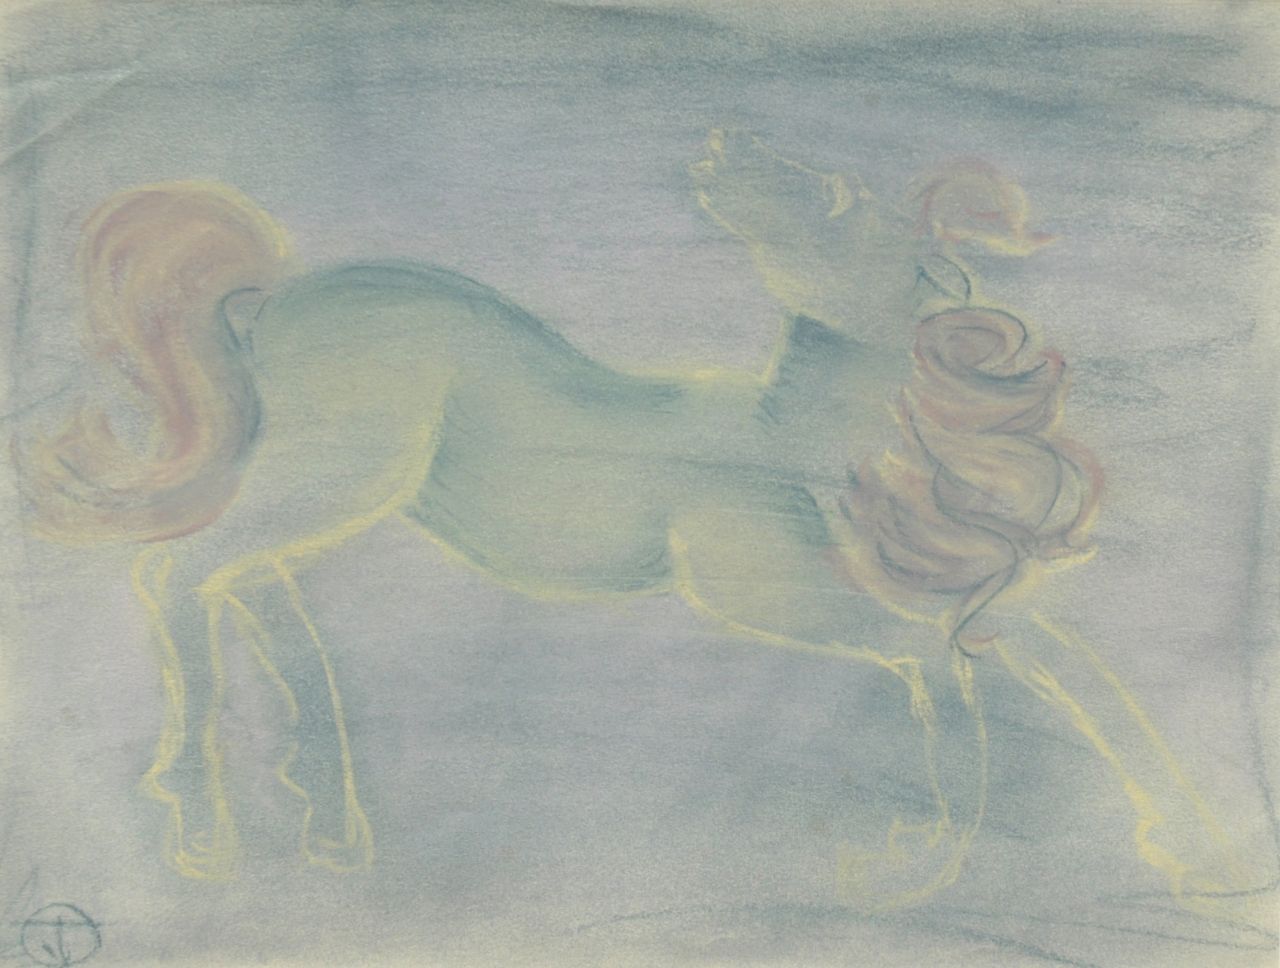 Oranje-Nassau (Prinses Beatrix) B.W.A. van | Beatrix Wilhelmina Armgard van Oranje-Nassau (Prinses Beatrix), Paard, pastel op papier 23,2 x 30,3 cm, gesigneerd met mon. TvO